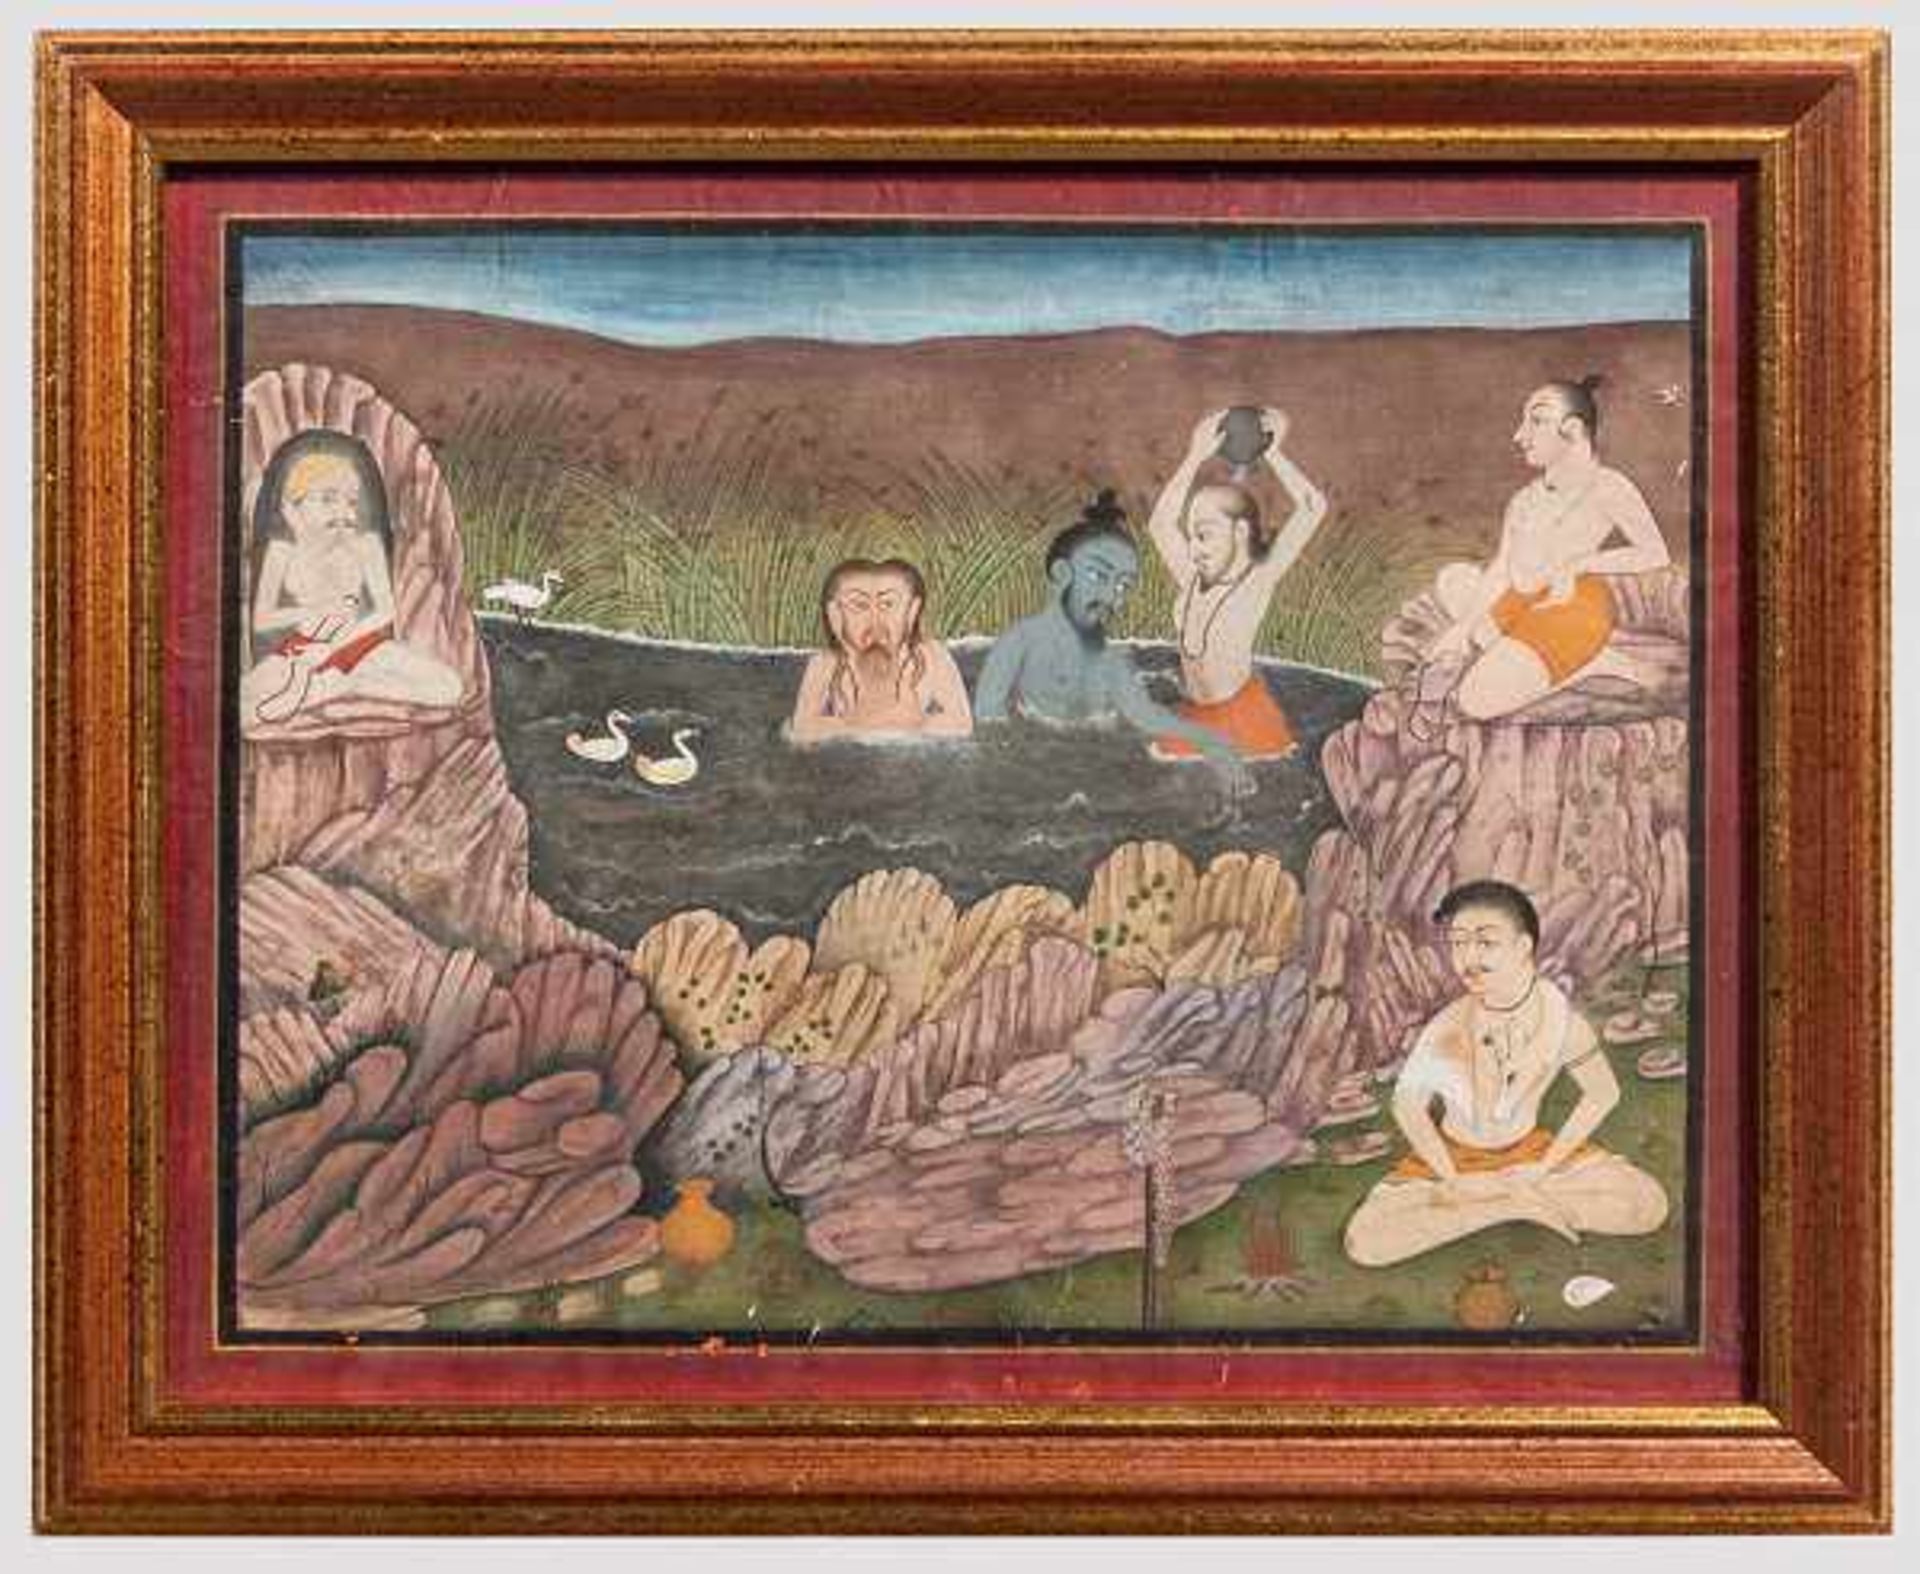 Miniatur, Indien, Kotah/Bundi, 19. Jhdt. Gouache auf Papier. Ein Gruppe von Yogis bei rituellen